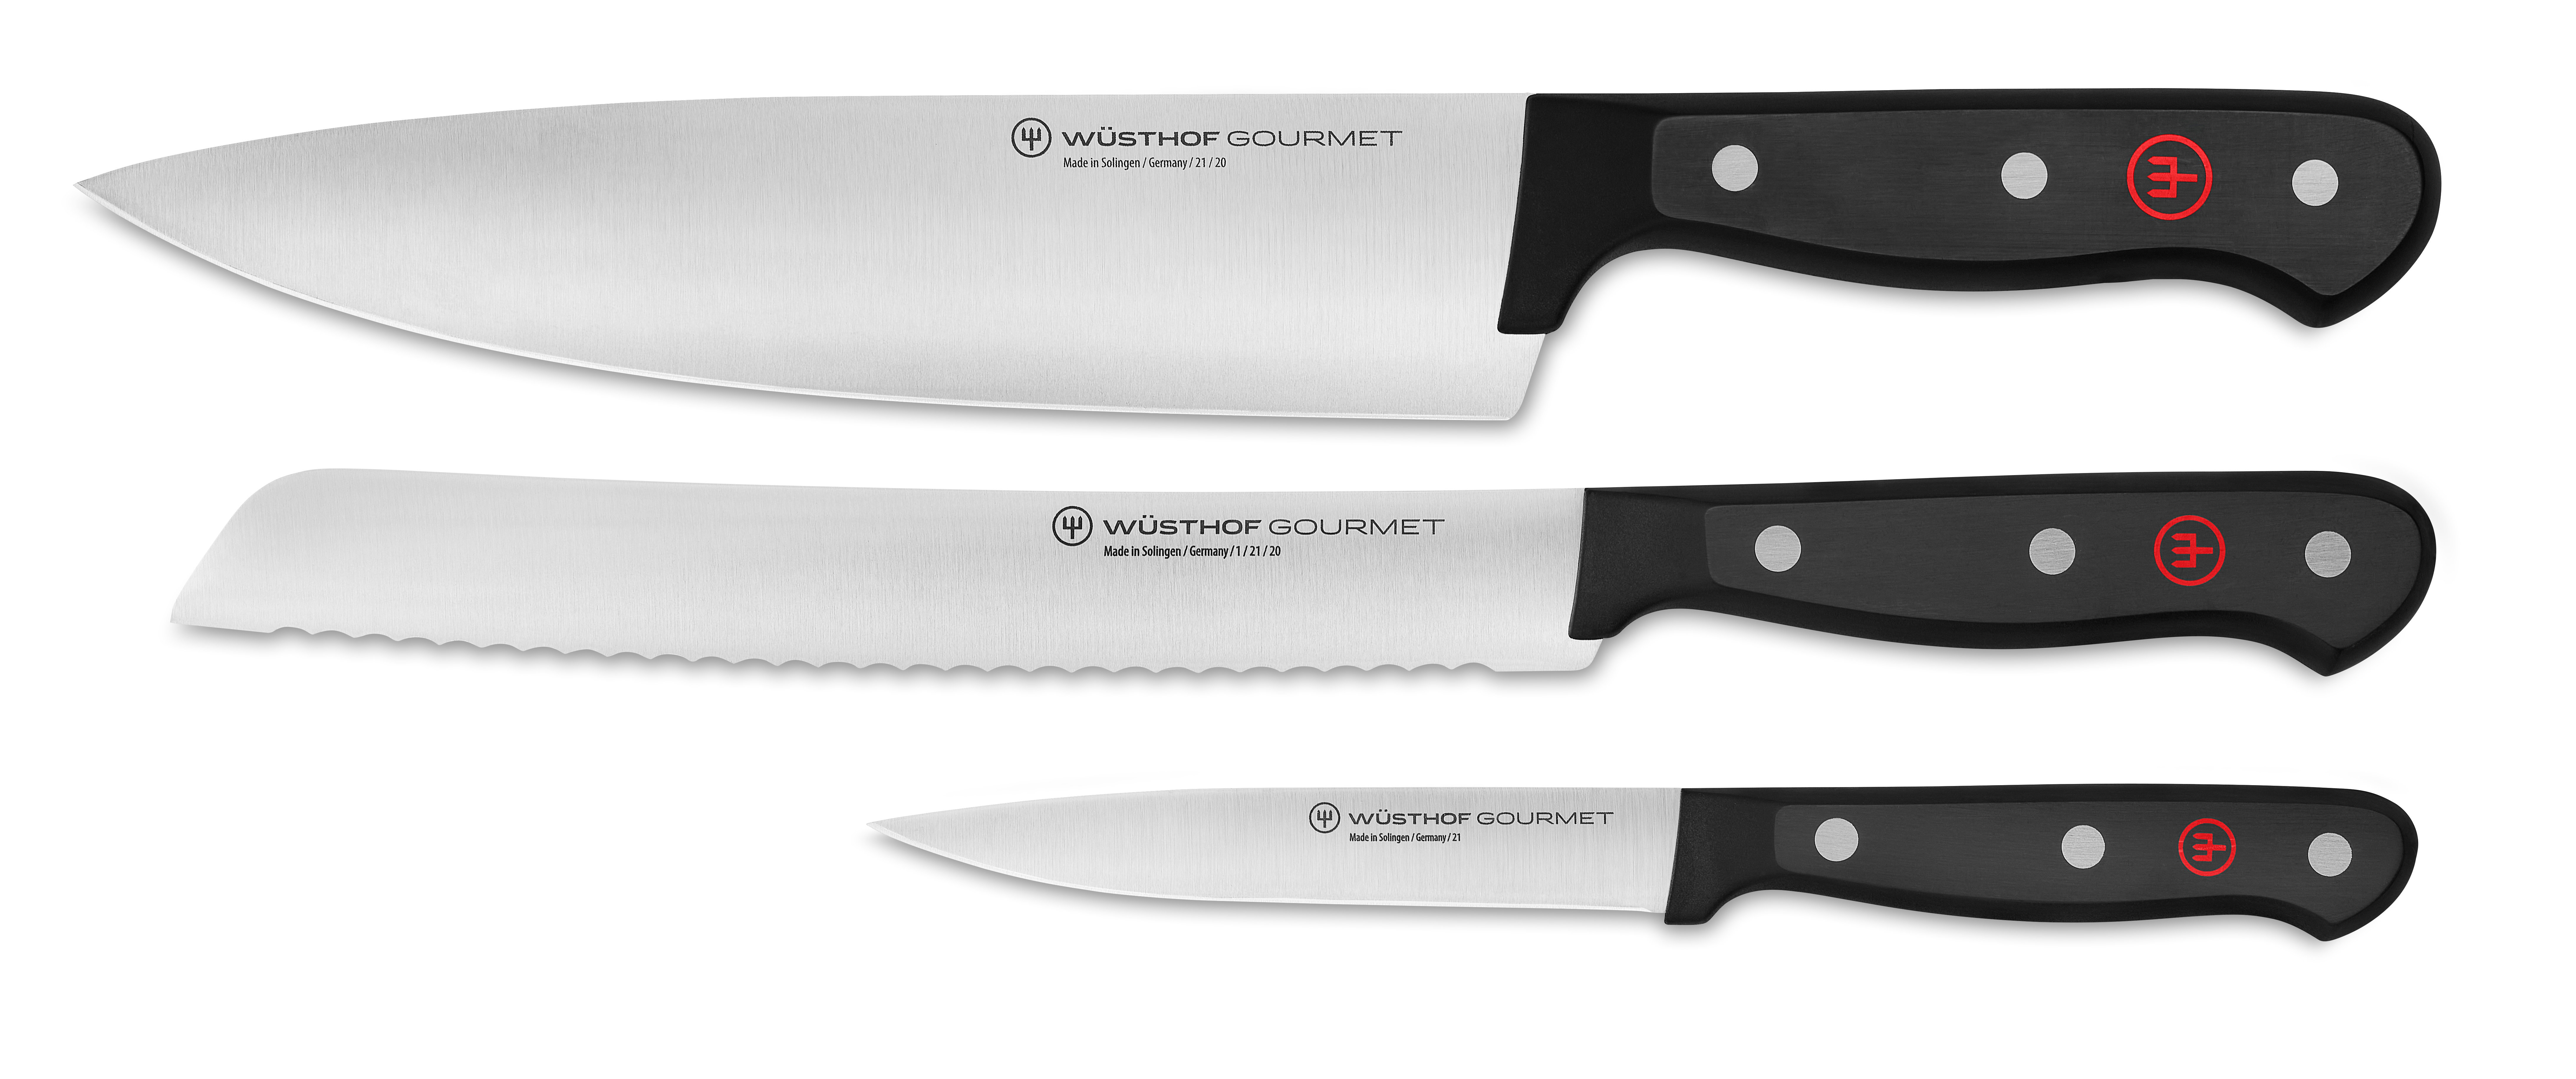 https://assets.wfcdn.com/im/20641343/compr-r85/2000/200090312/wuesthof-gourmet-3-piece-starter-knife-set.jpg